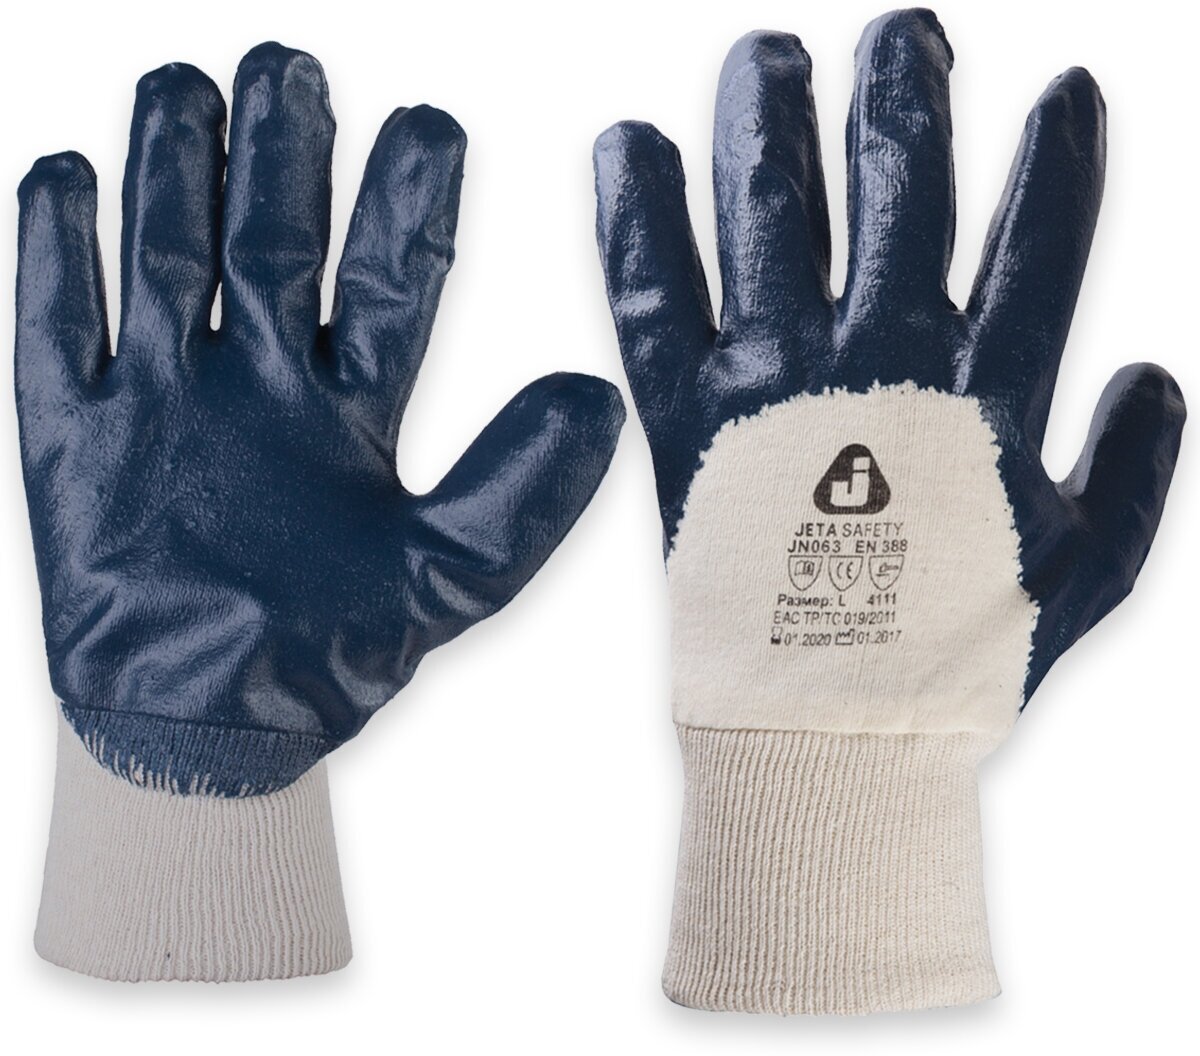 JN063 Масло-бензостойкие перчатки с нитриловым покрытием, цвет синий, размер XL, - 1 пара - фотография № 2